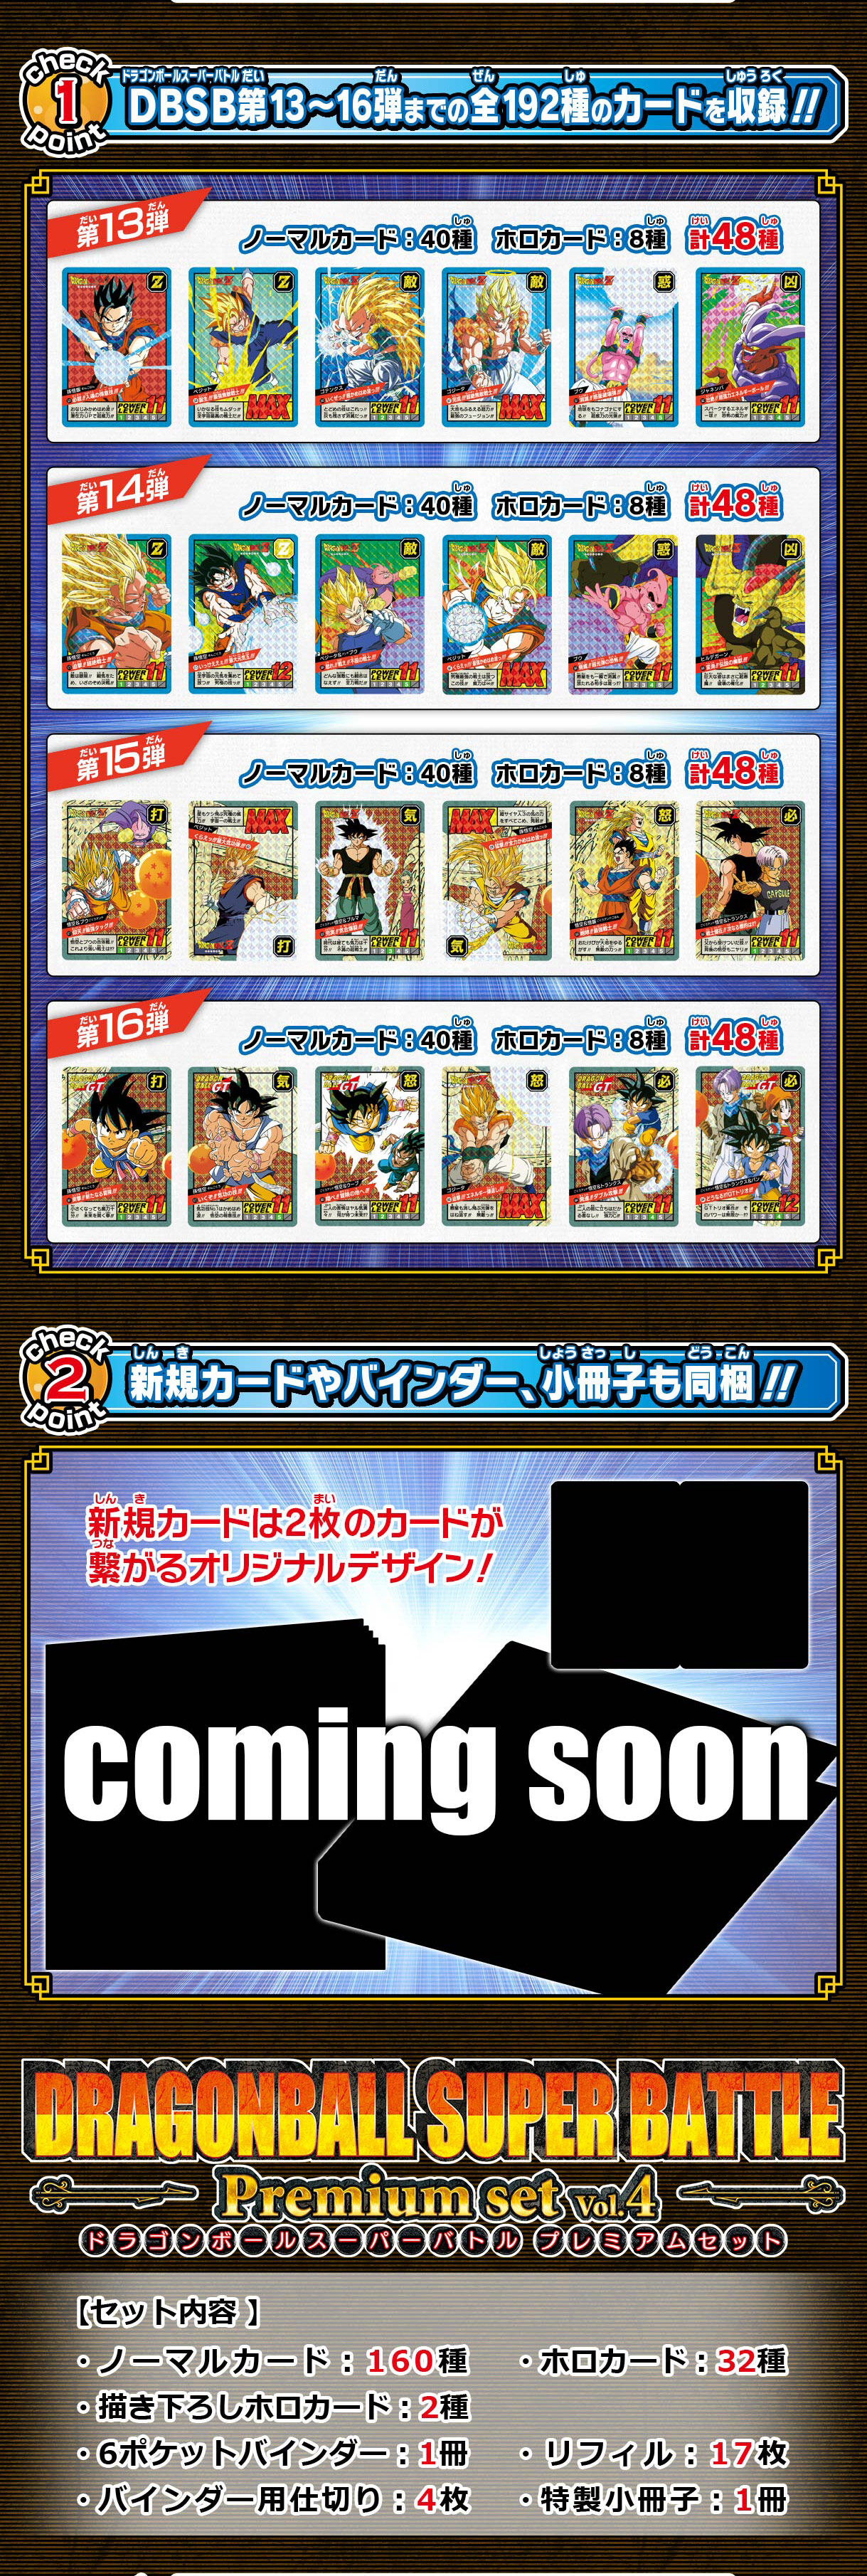 カードダス ドラゴンボール スーパーバトル Premium set Vol.4 